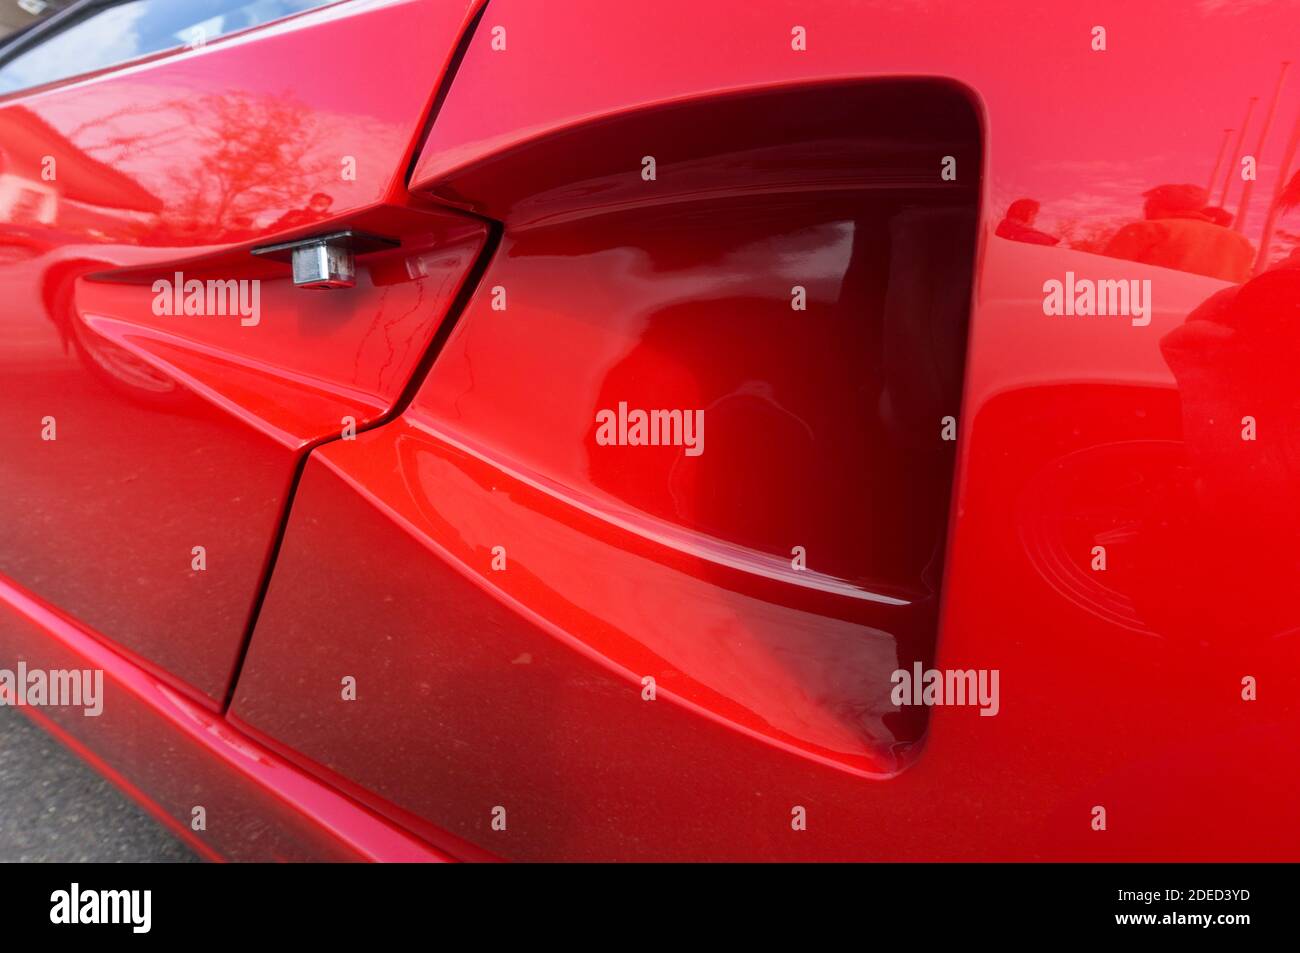 Primo piano della presa d'aria NACA Duct sul lato sinistro di una  Lamborghini Countach 25th Anniversary Edition rossa, che mostra il gancio  della porta nascosto Foto stock - Alamy